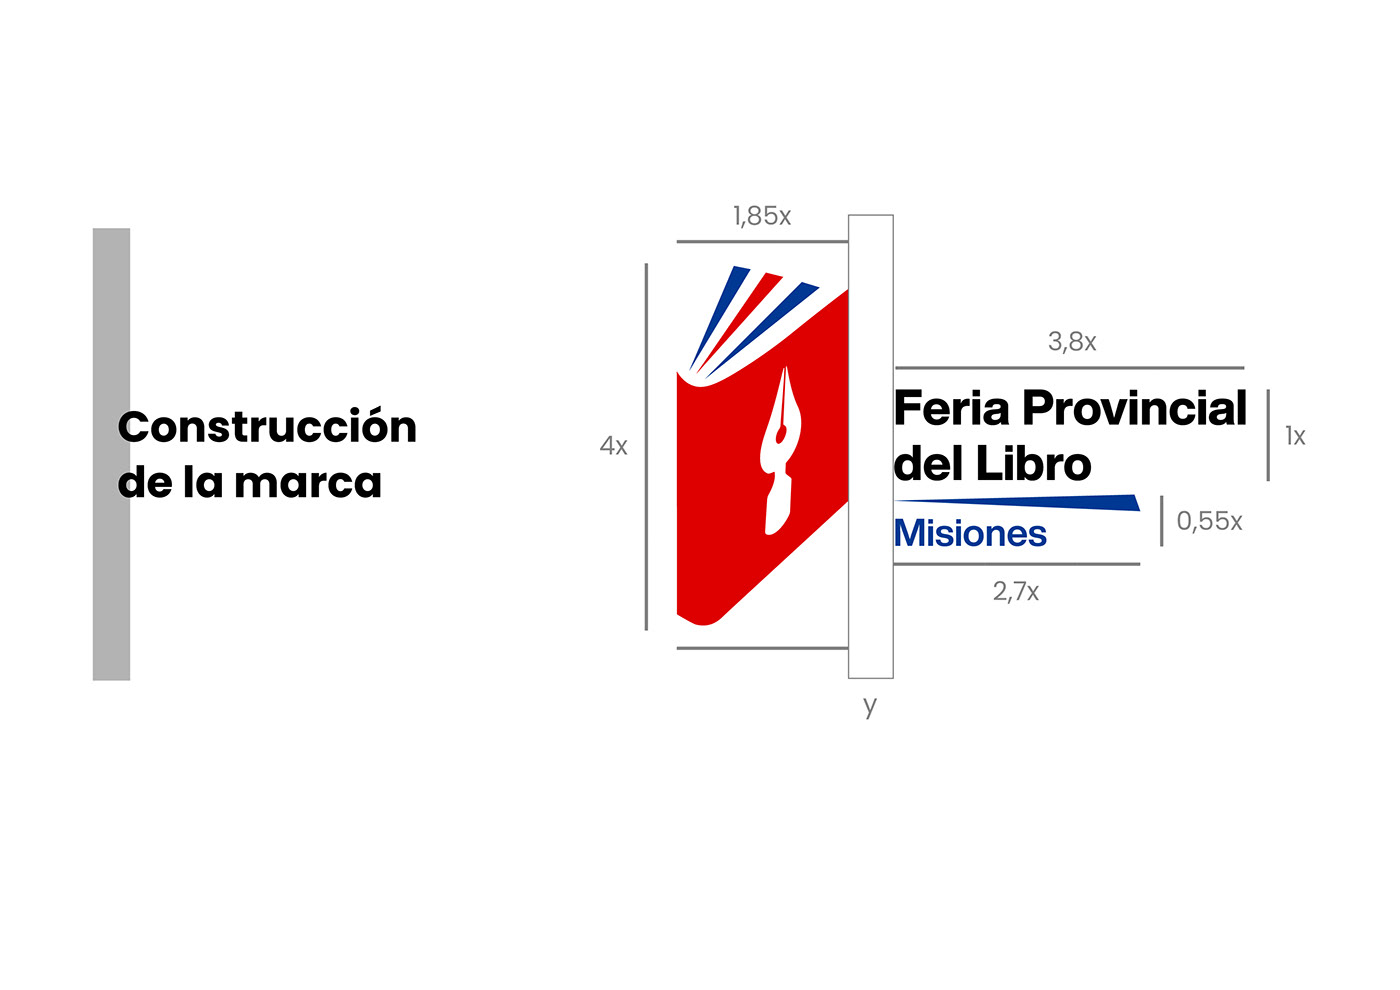 aplicaciones feria identidad visual libro logo Manual de Marca marca normalización simbolo visual identity